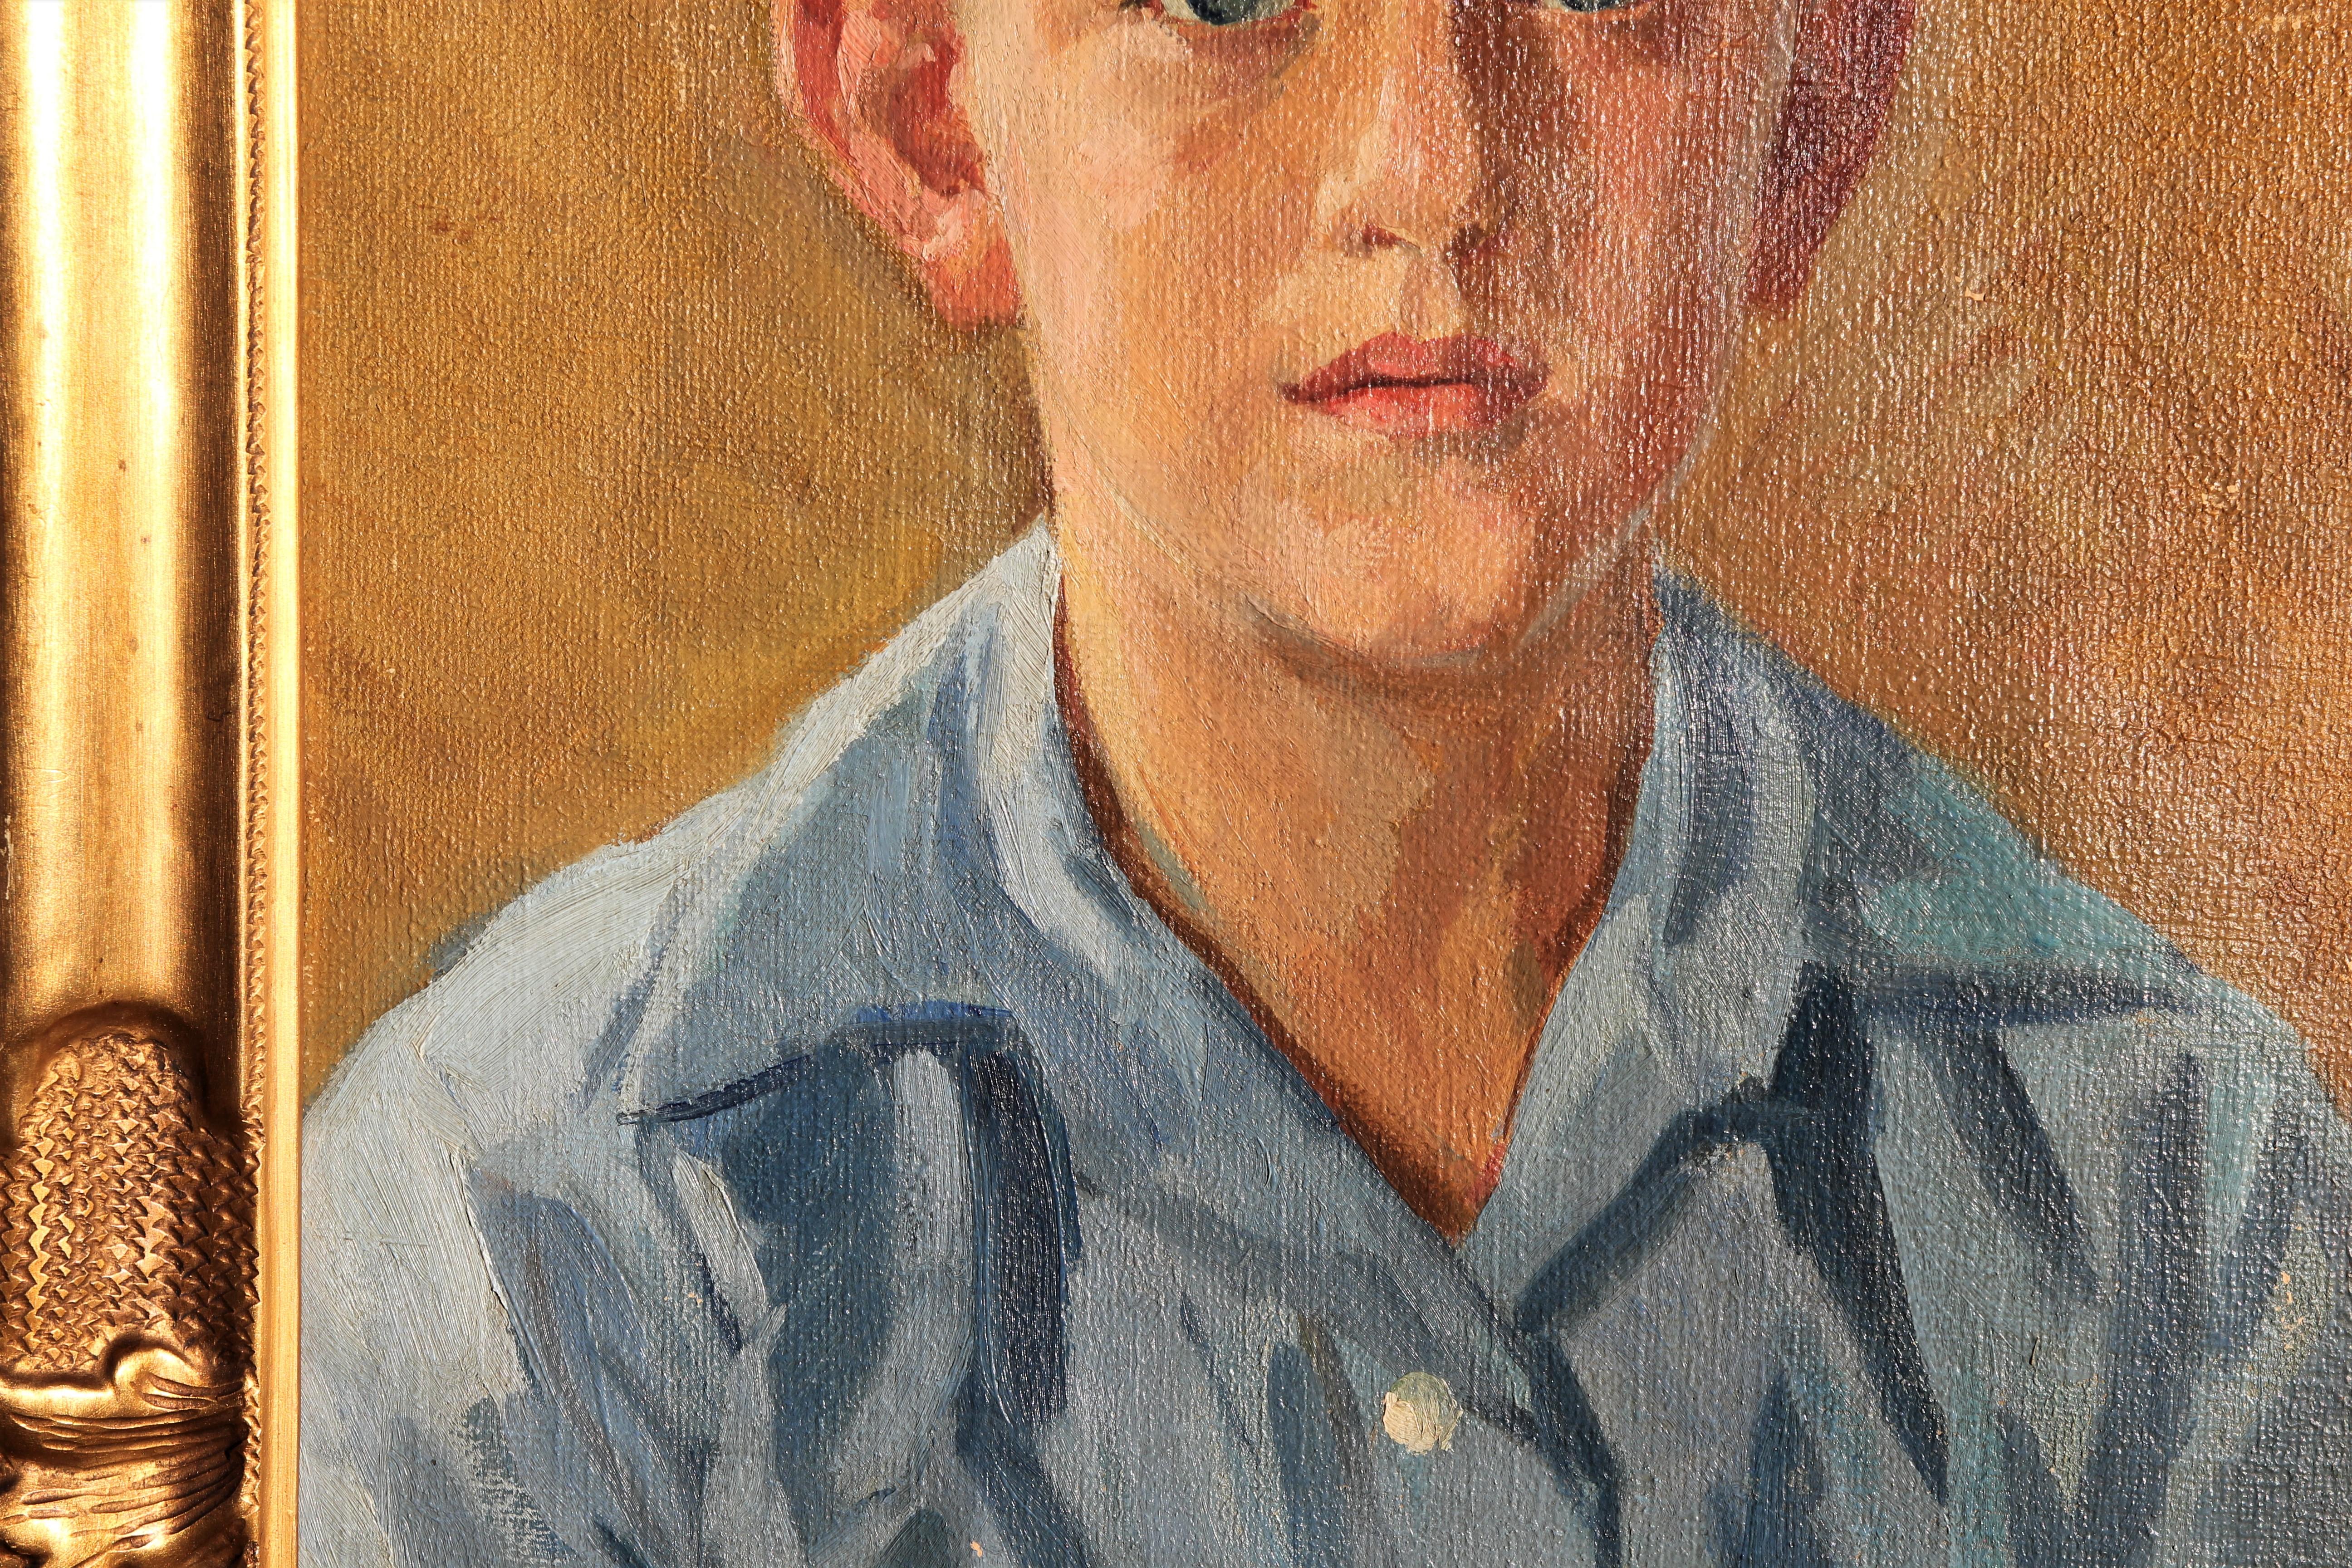 Portrait impressionniste abstrait d'un garçon aux tons jaunes et bleus, réalisé par l'artiste danois Hans Christian Bärenholdt. Signé par l'artiste en bas à droite. Accroché dans un cadre sculpté à l'or fin.

Dimensions sans cadre : H 17.63 in. x W